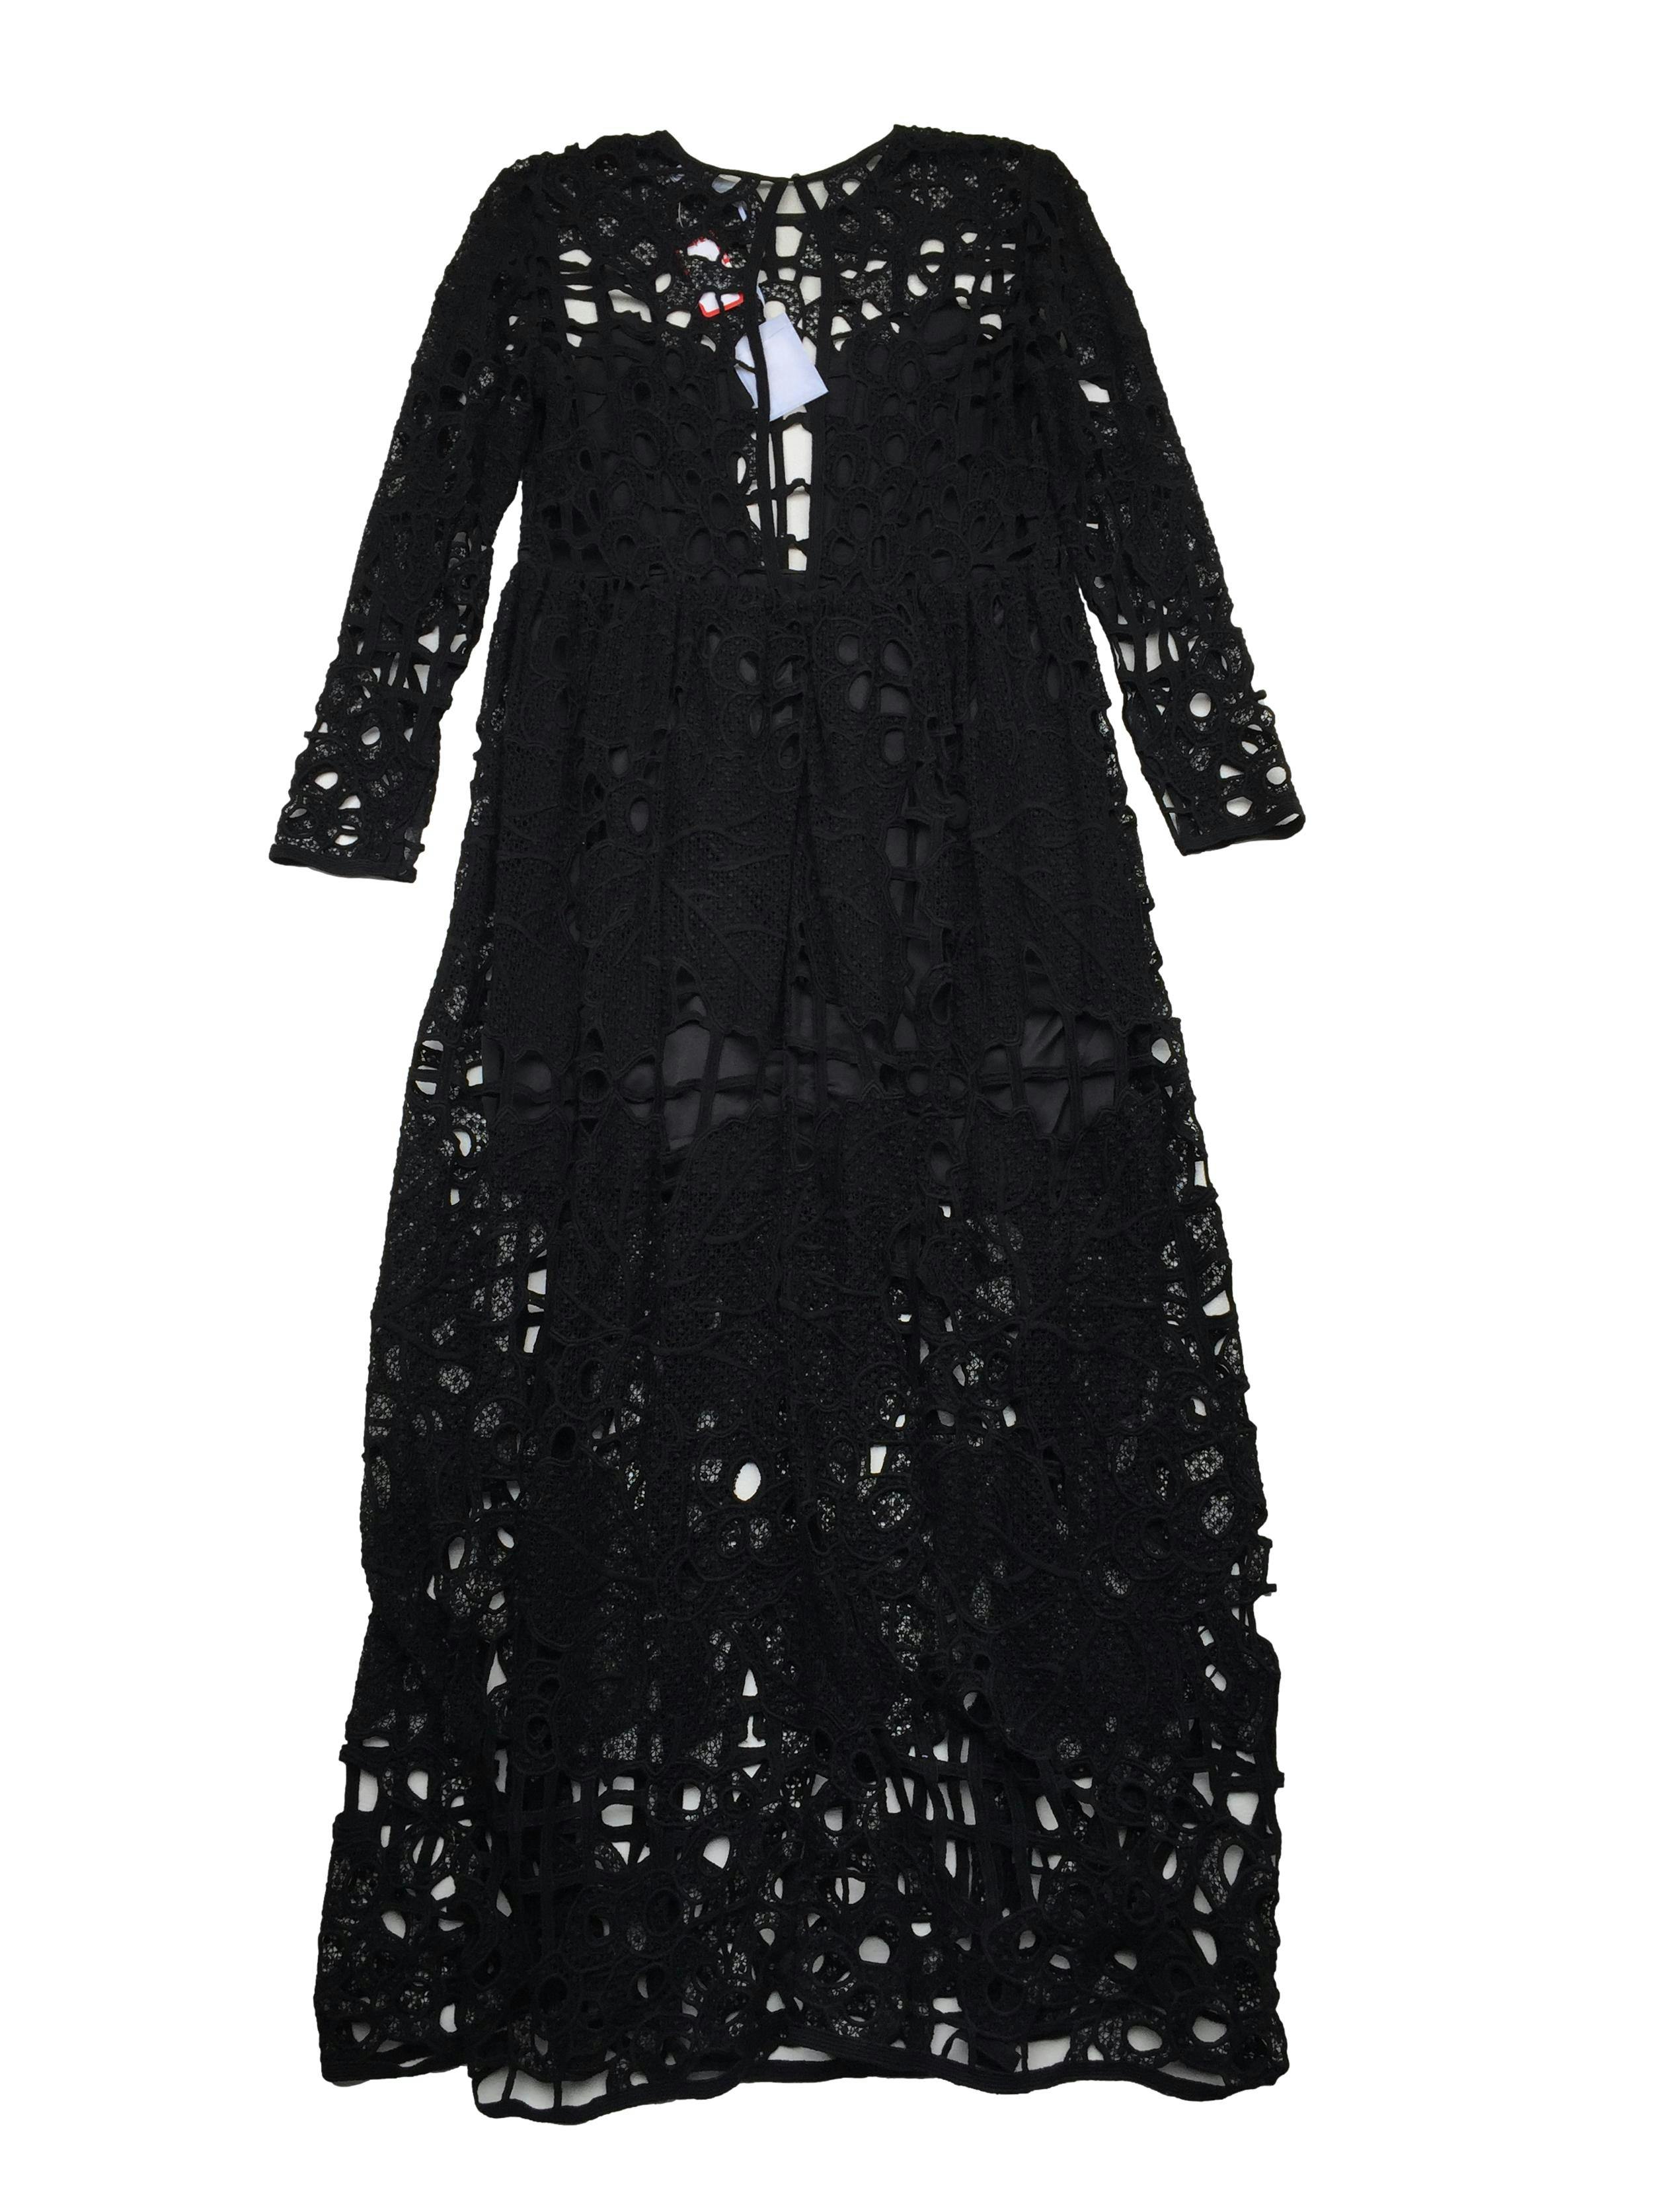 Vestido Alice MacCall de encaje negro 100% algodón con forro, abertura en espalda, botón y cierre invisible. Nuevo con etiqueta, precio original S/1500. Busto 100cm, Largo 145cm.